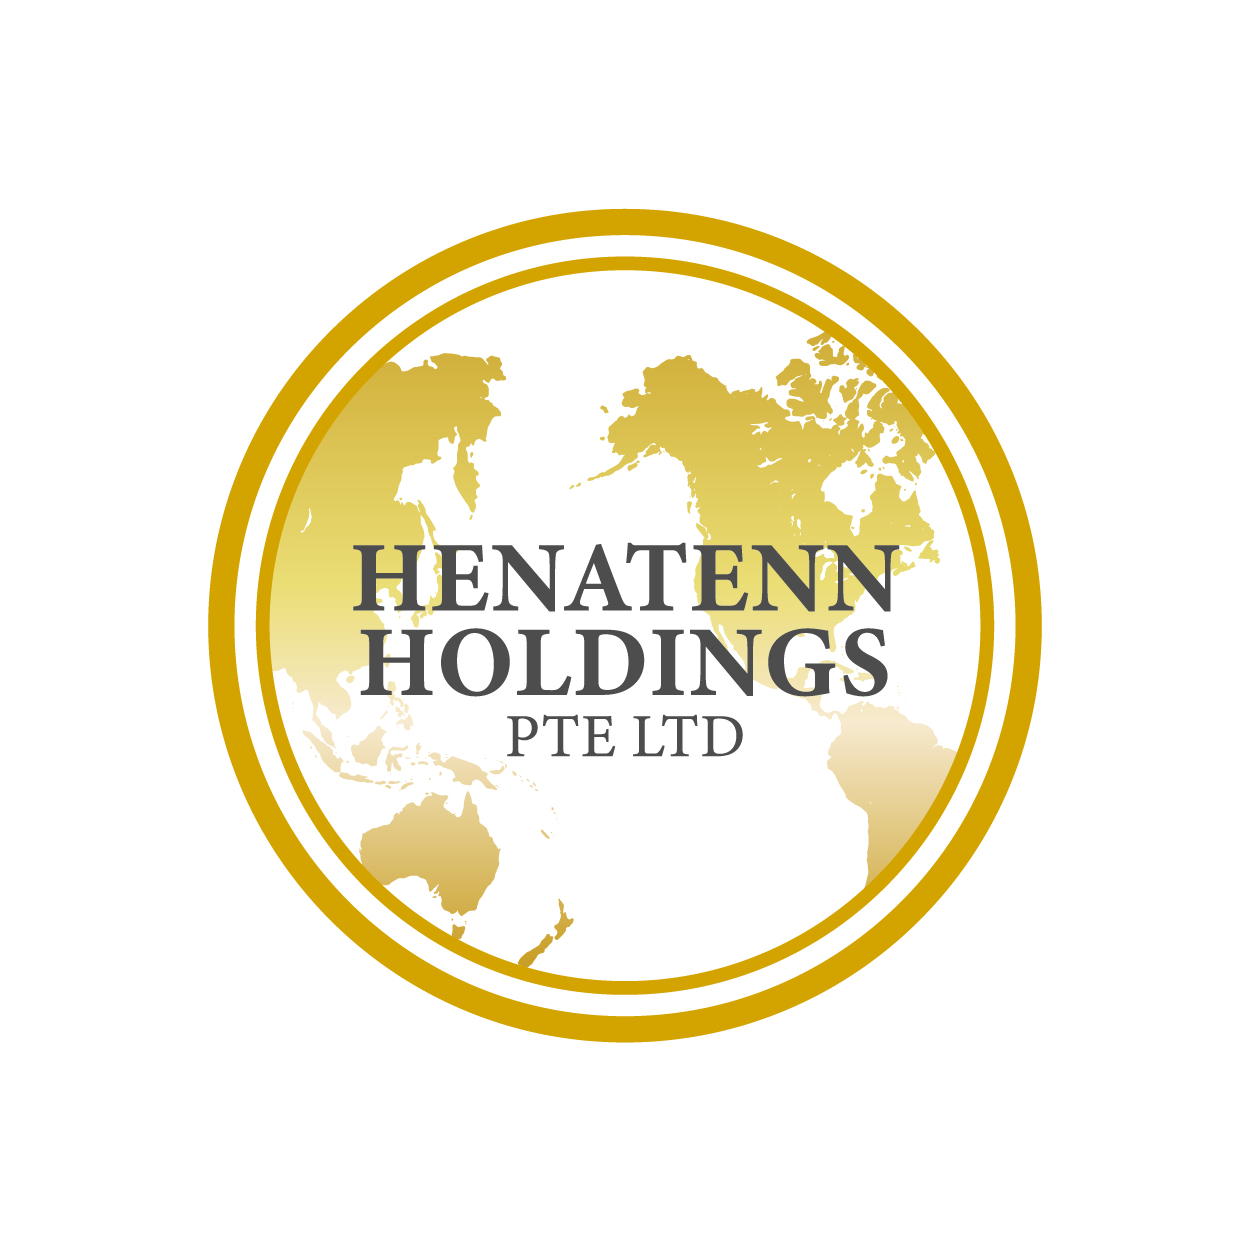 Henatenn Holdings Pte Ltd